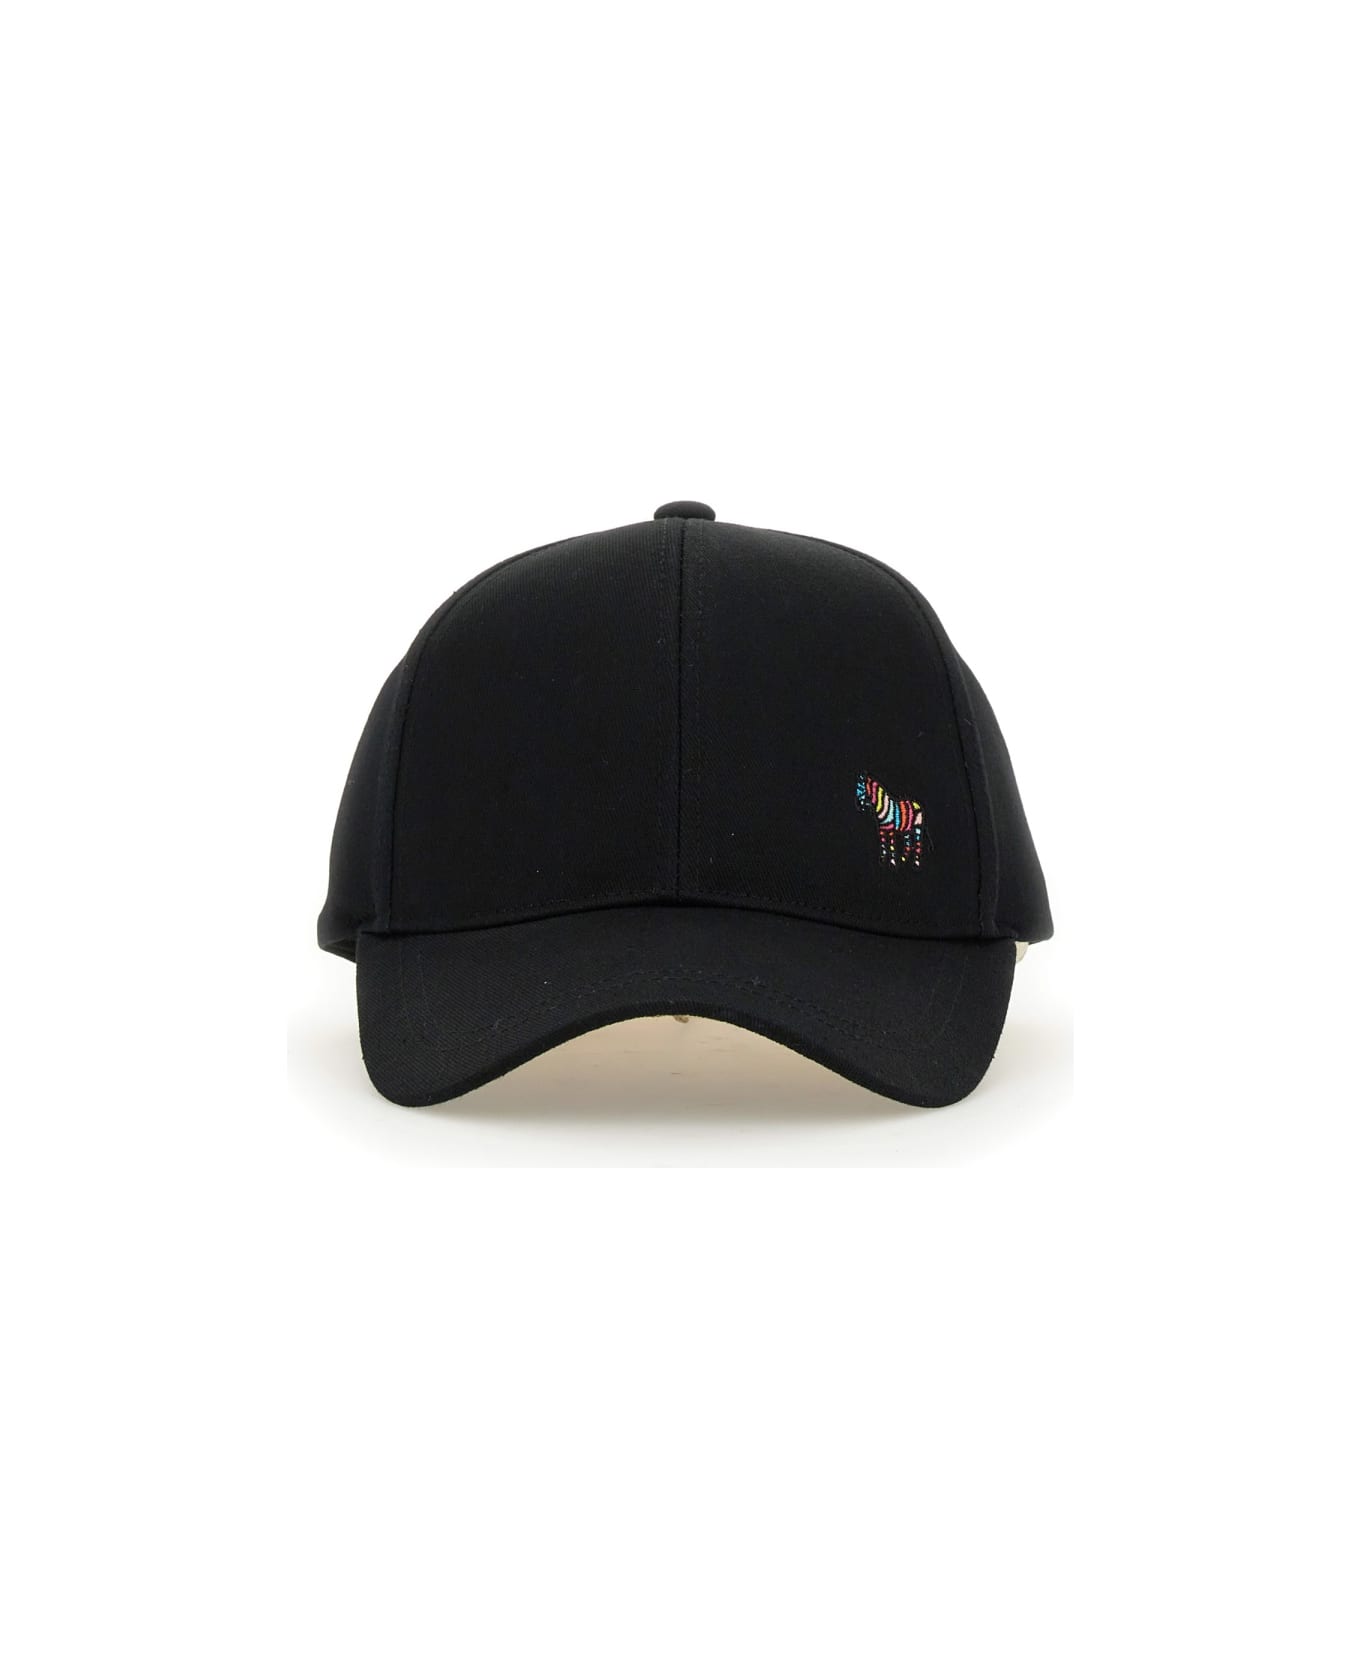 Paul Smith Baseball Cap - BLACK 帽子